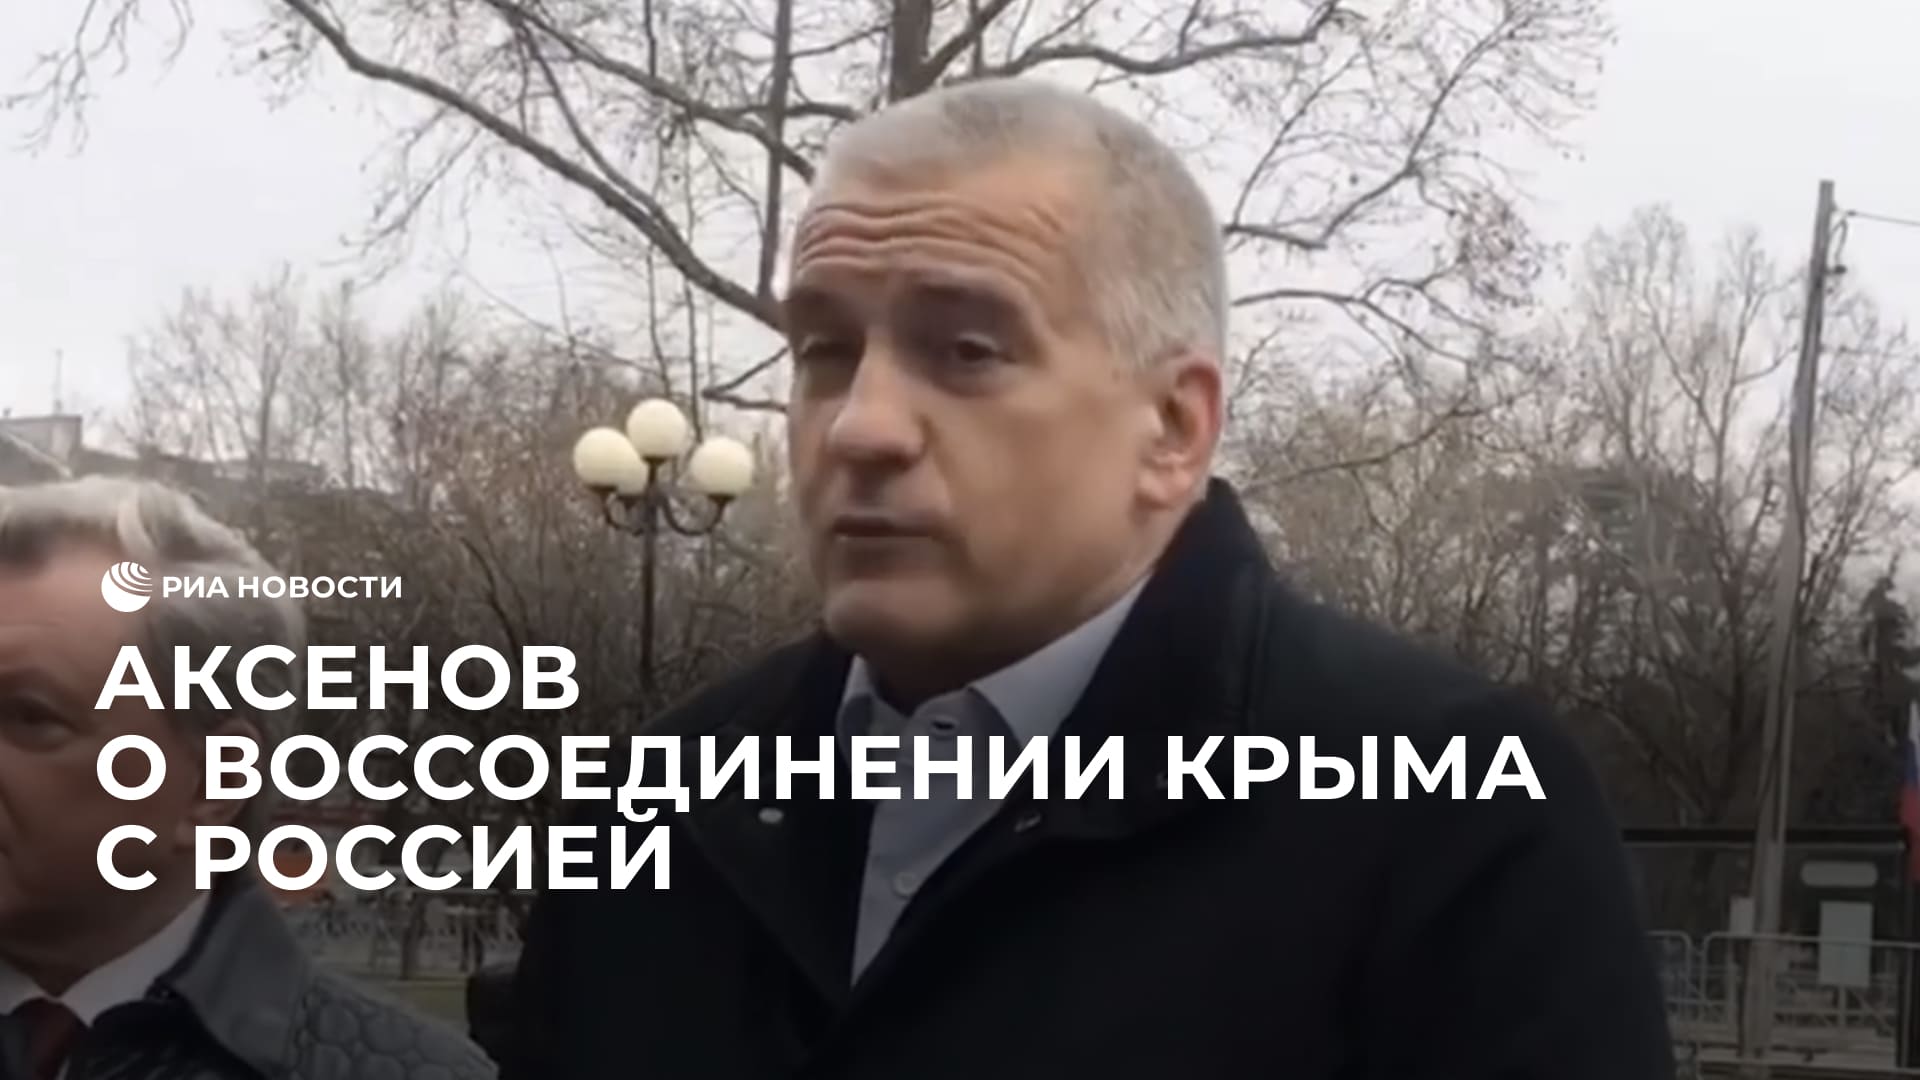 Аксенов рассказал, что способствовало успеху воссоединения Крыма с Россией